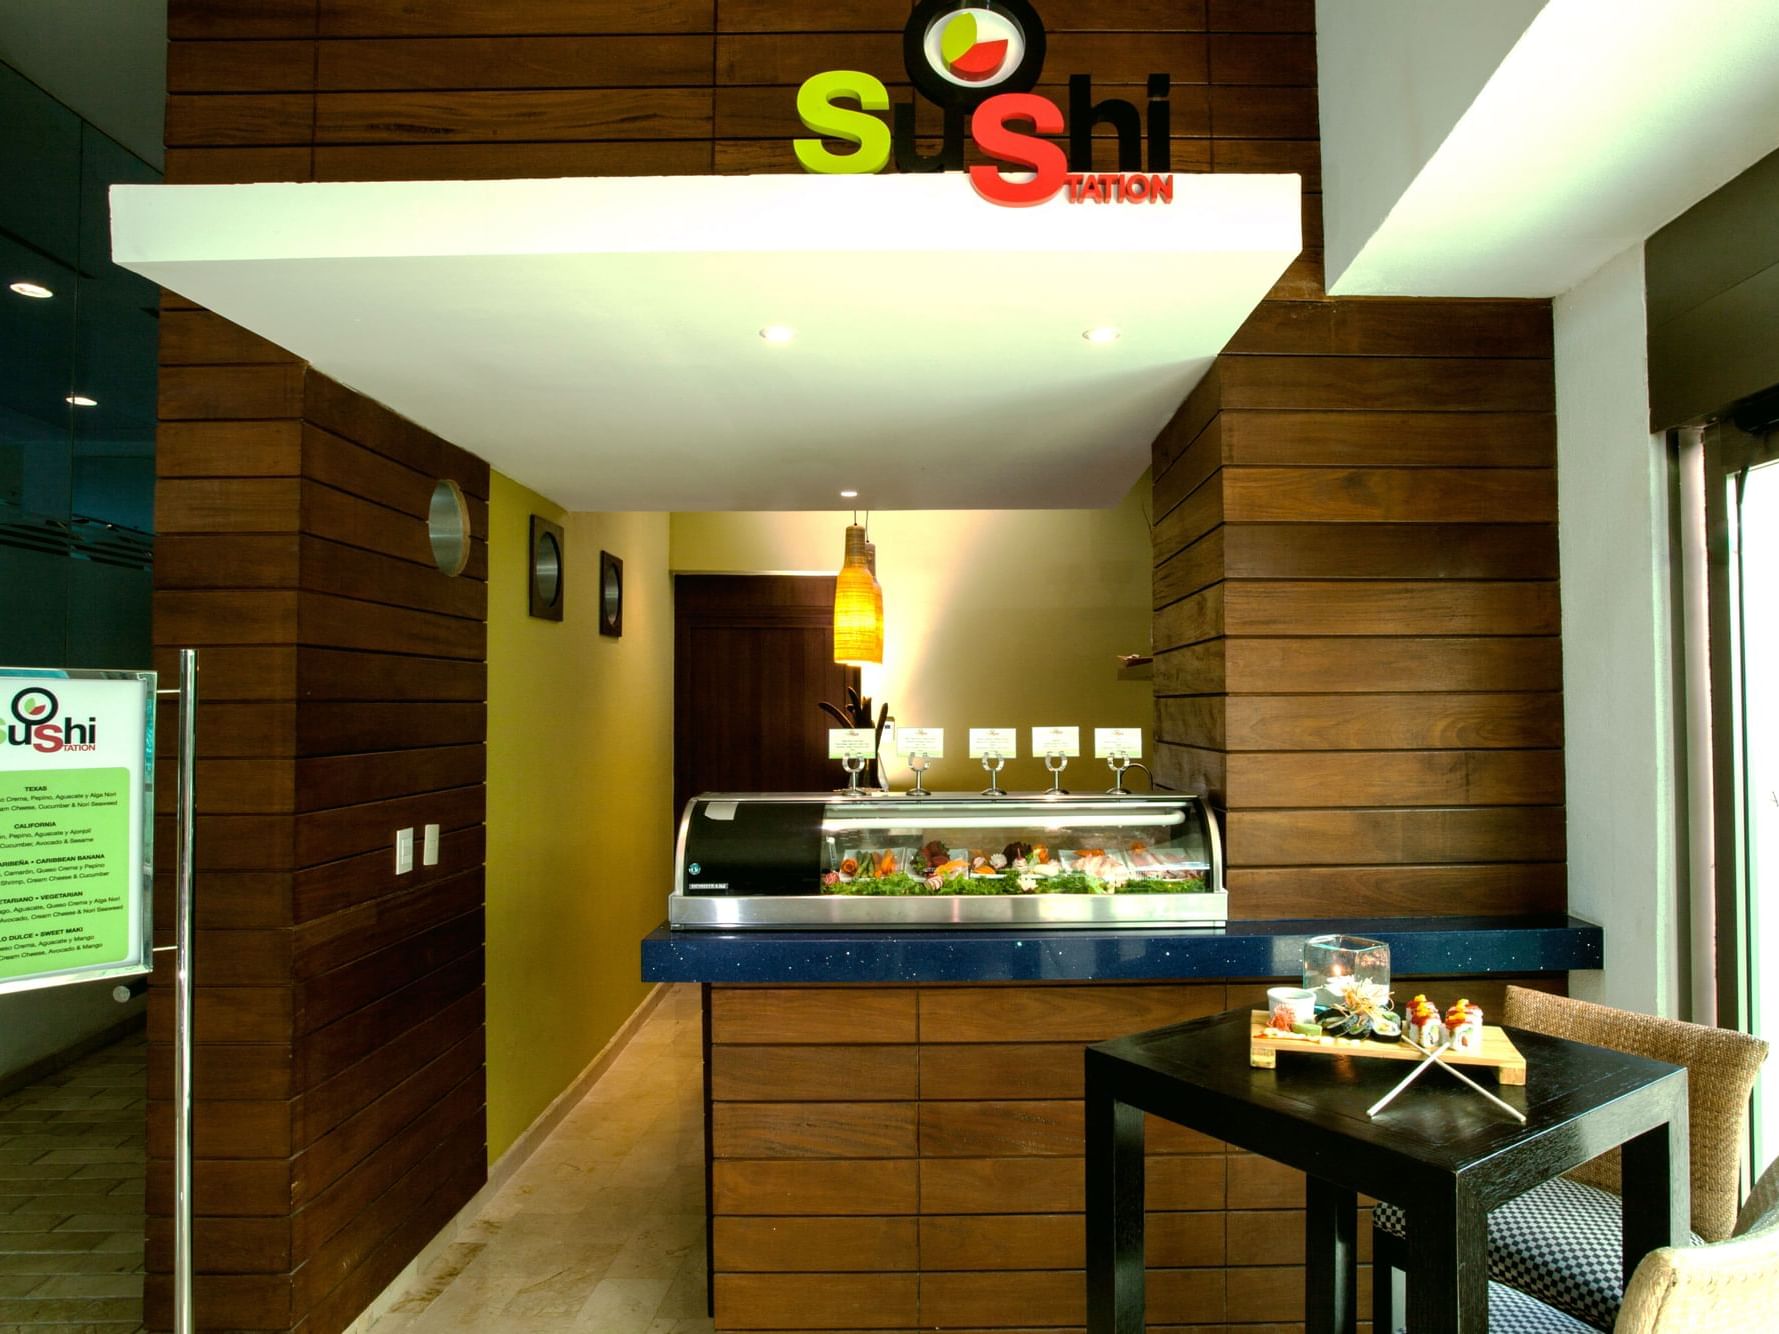 Sushi Station restaurent at La Colección Resorts